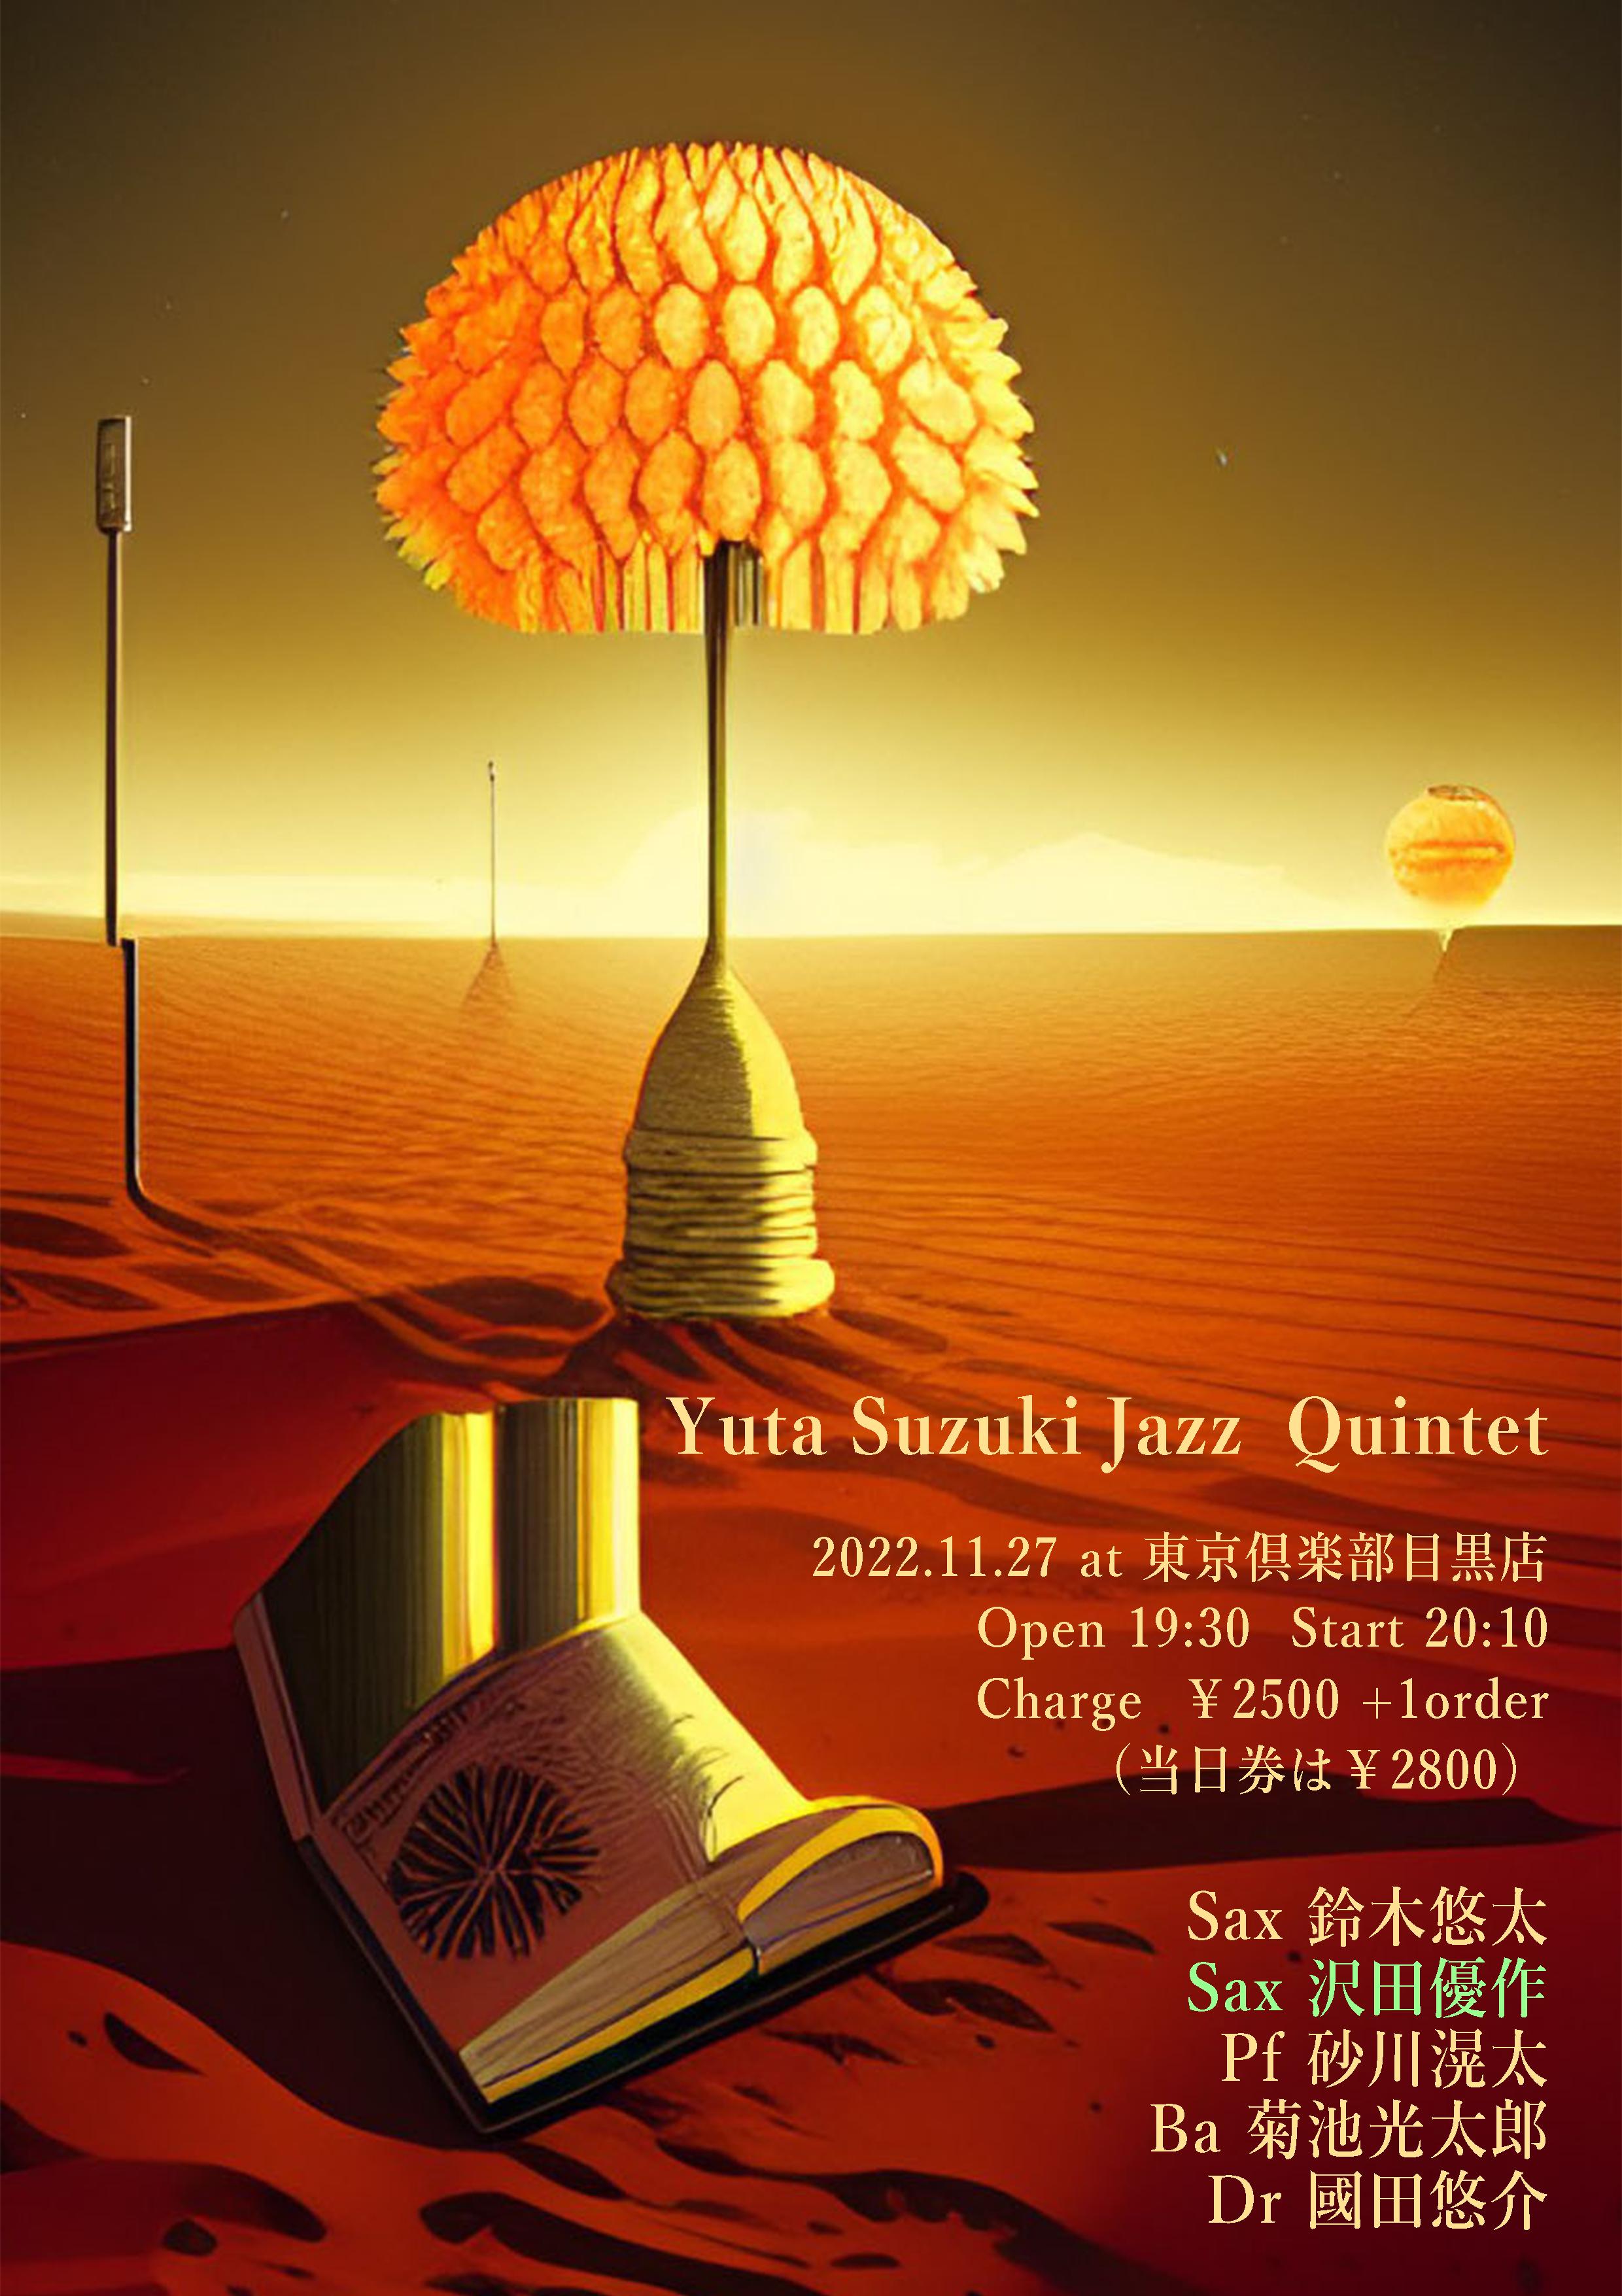 Yuta Suzuki Jazz Quintet